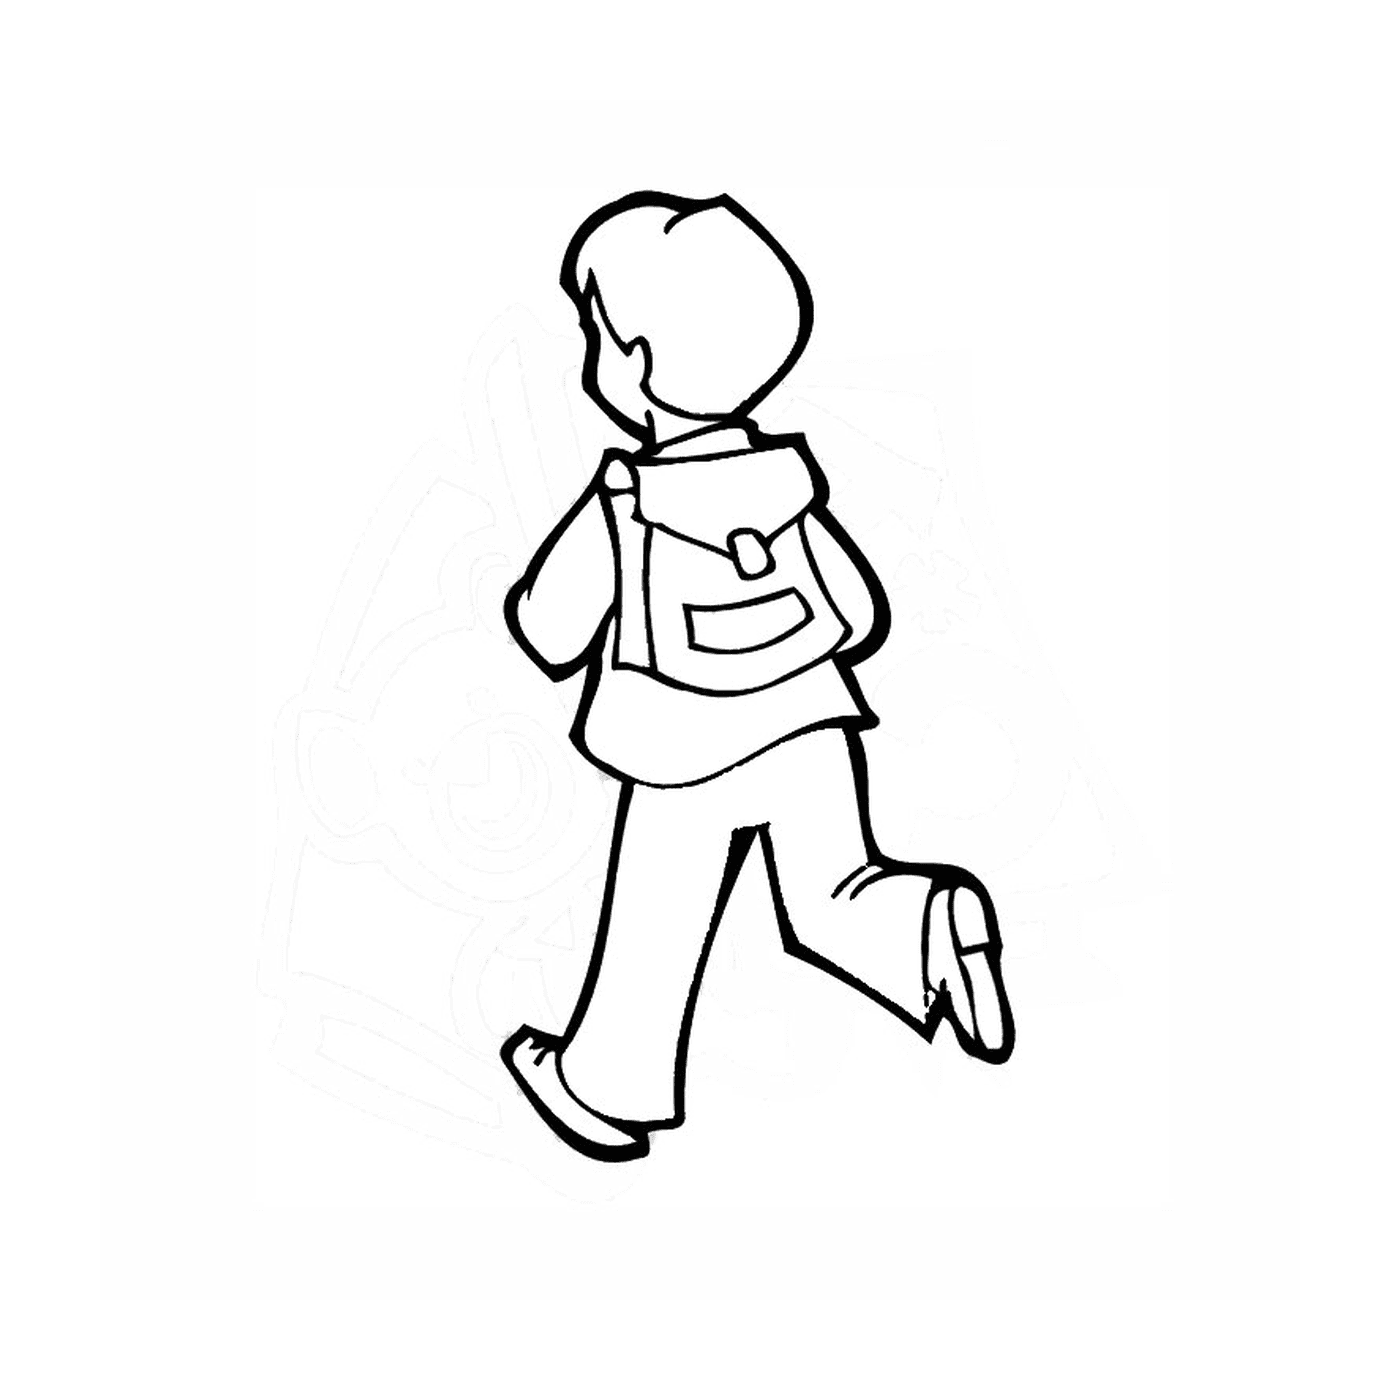  Ich gehe zur Schule: ein Junge läuft 